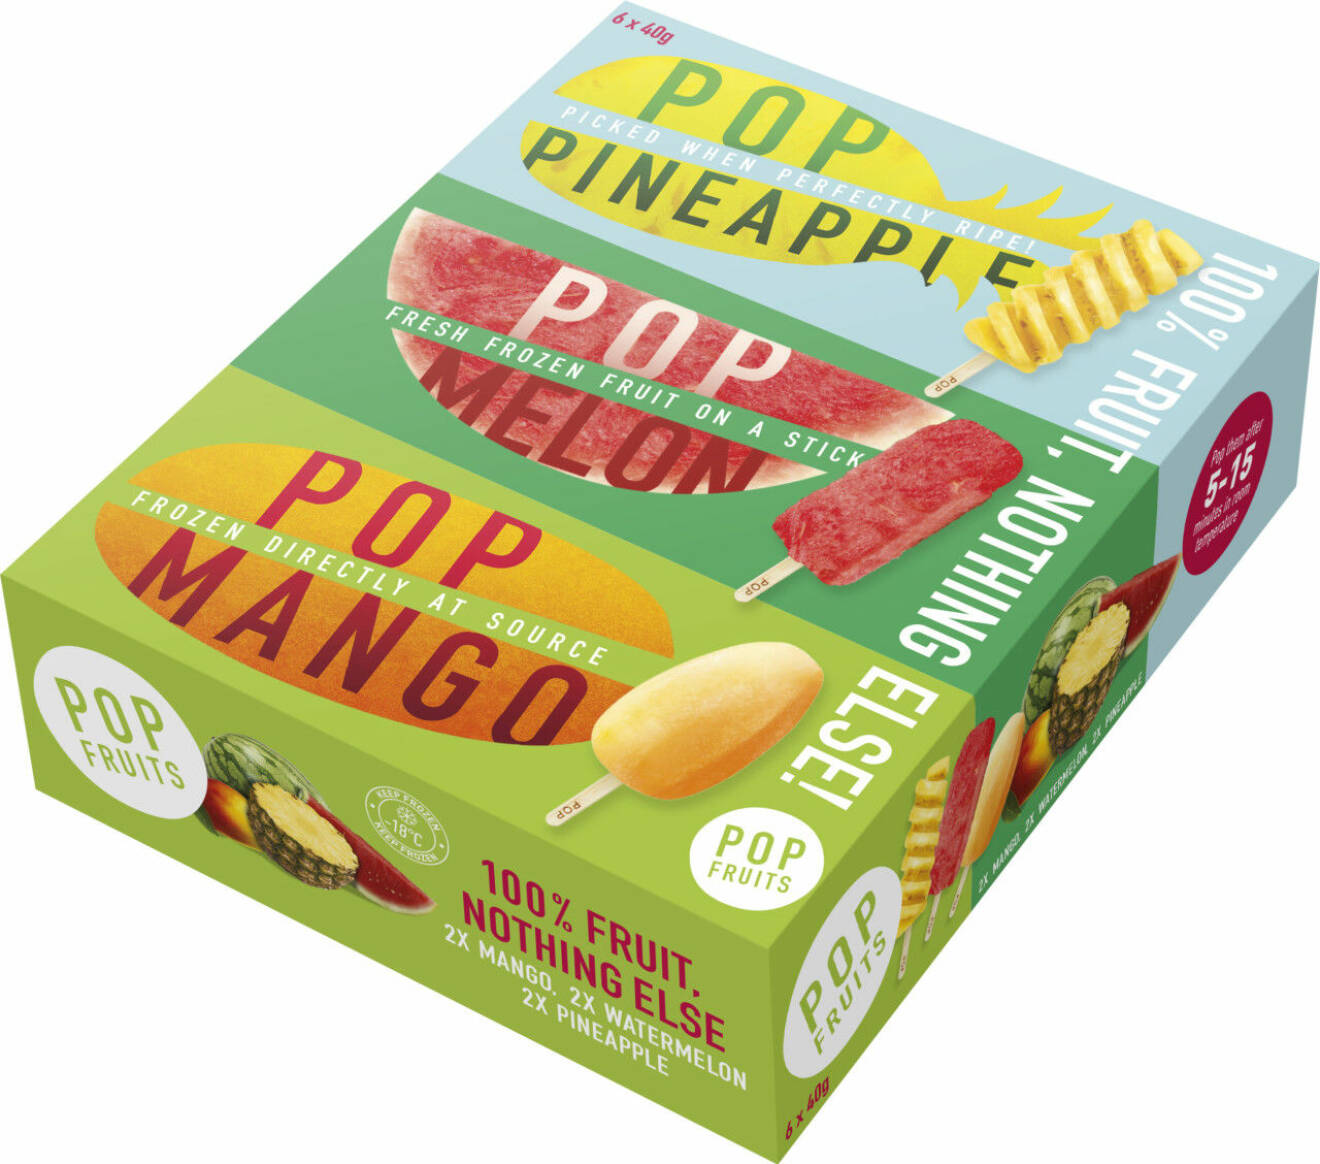 pop fruits paket